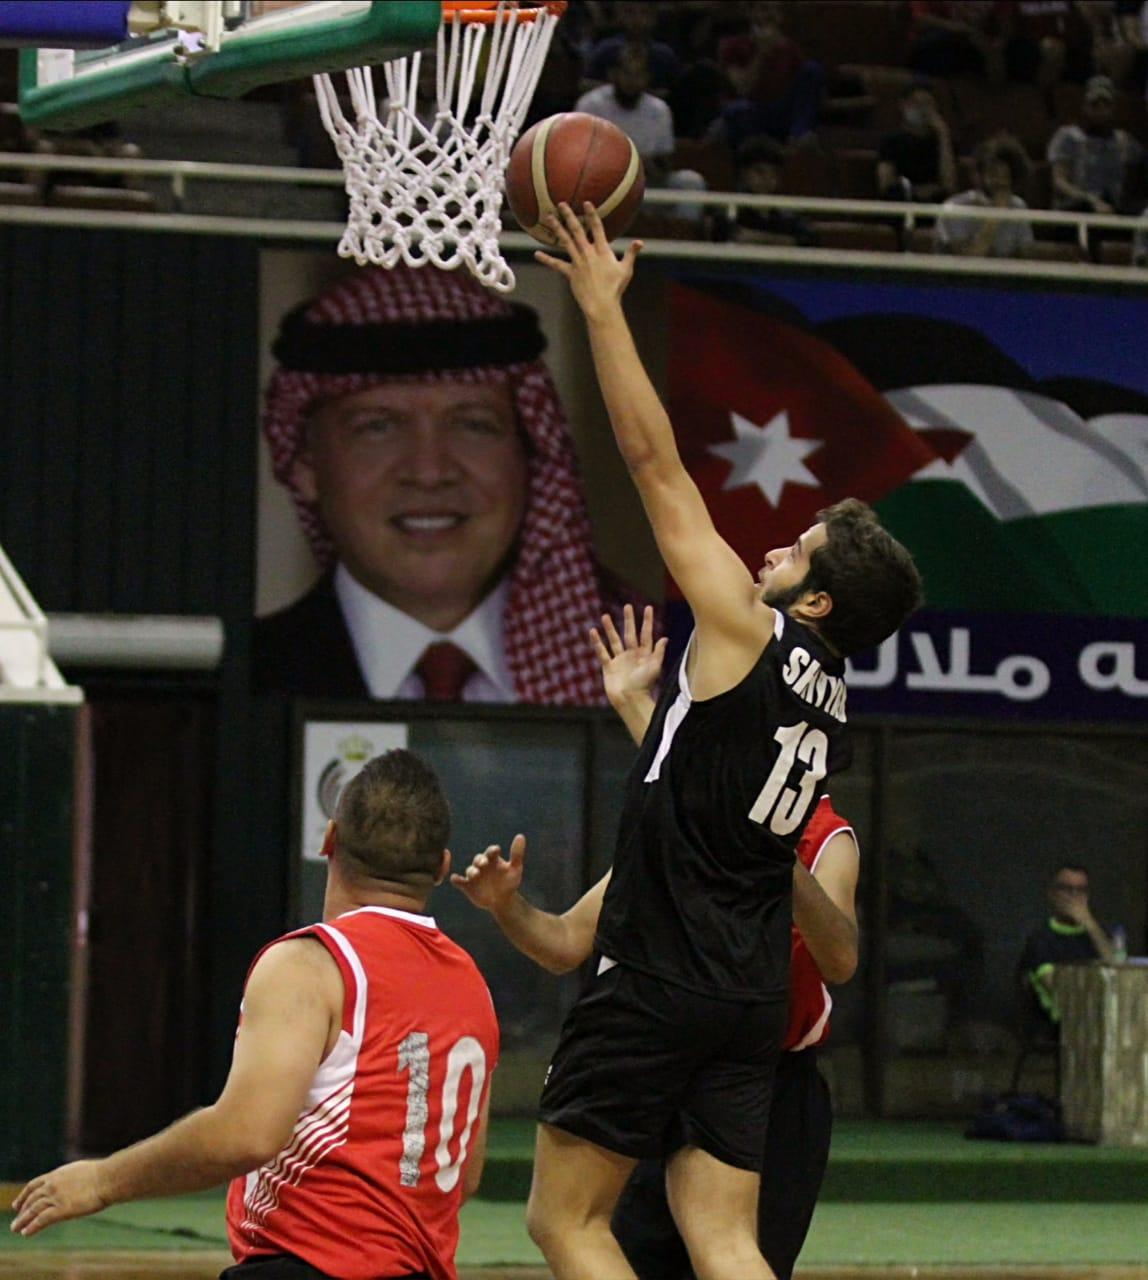 Coach Akef Al Shiyyab Banner